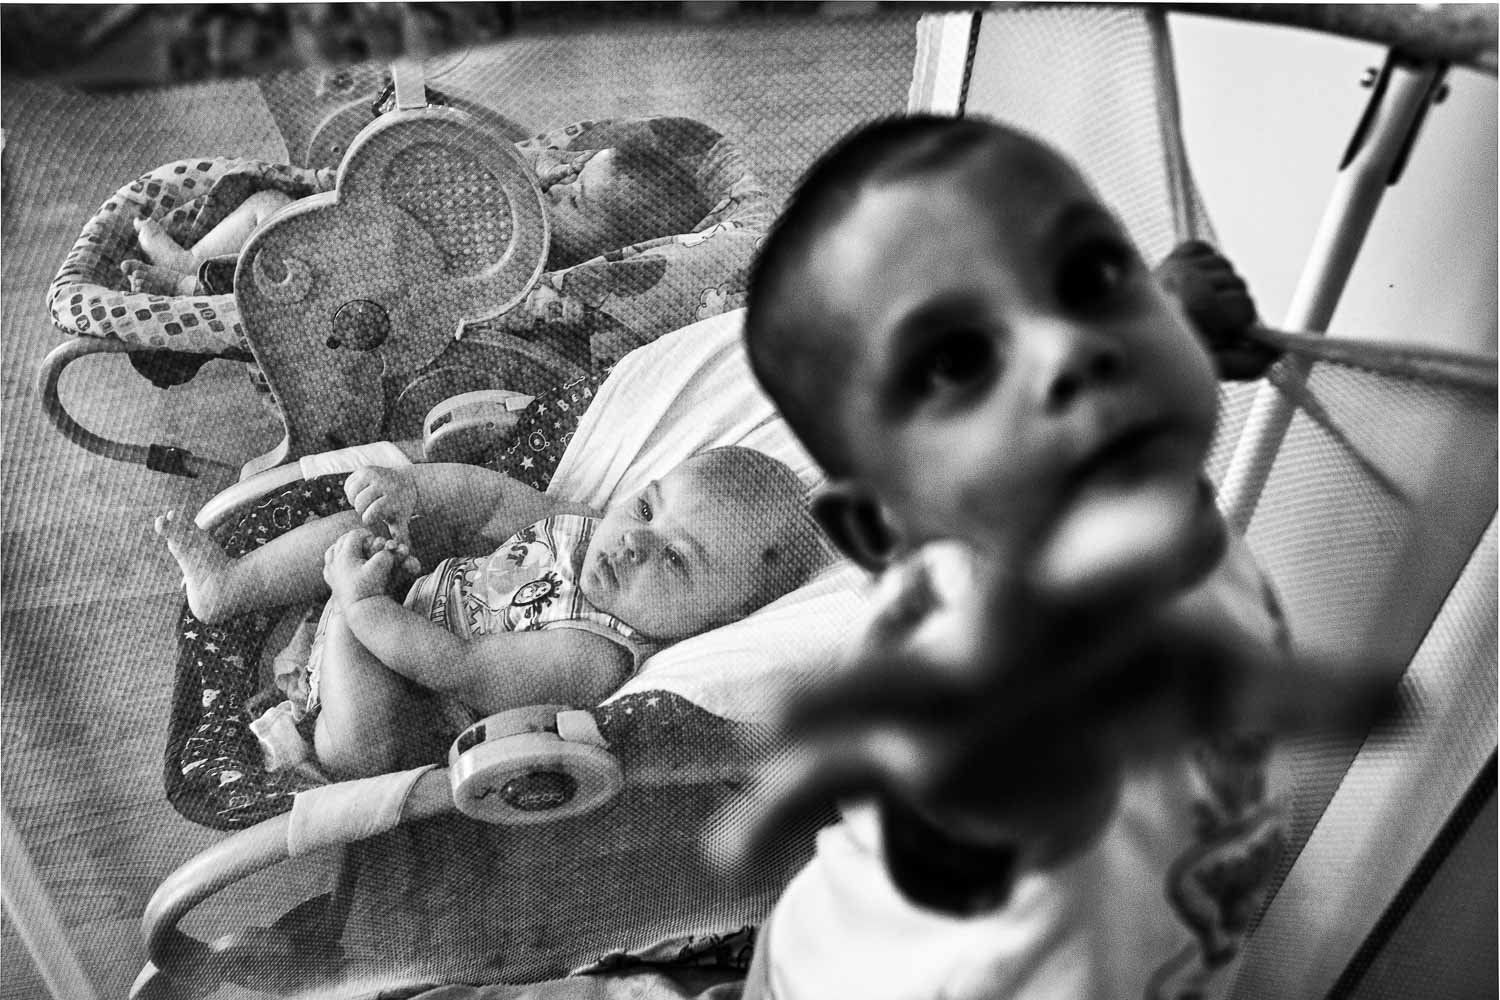 Fotografien von Nikos Pilos aus der Langzeit-Fotodokumentation "Living in recession"